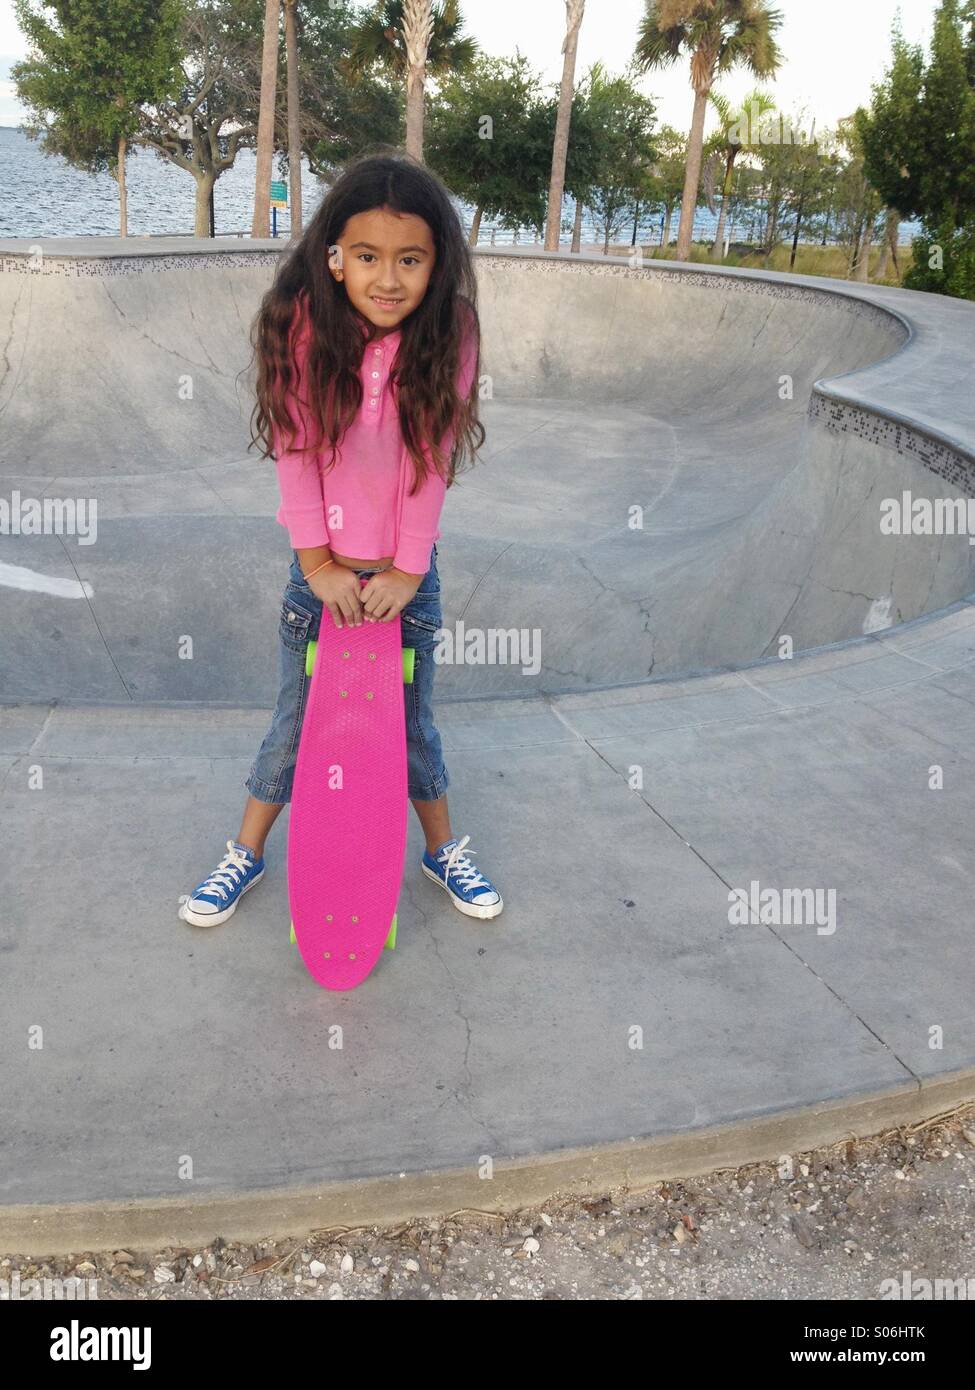 Una bambina di sette anni con il suo skateboard rosa in un parco della città in Florida. Foto Stock